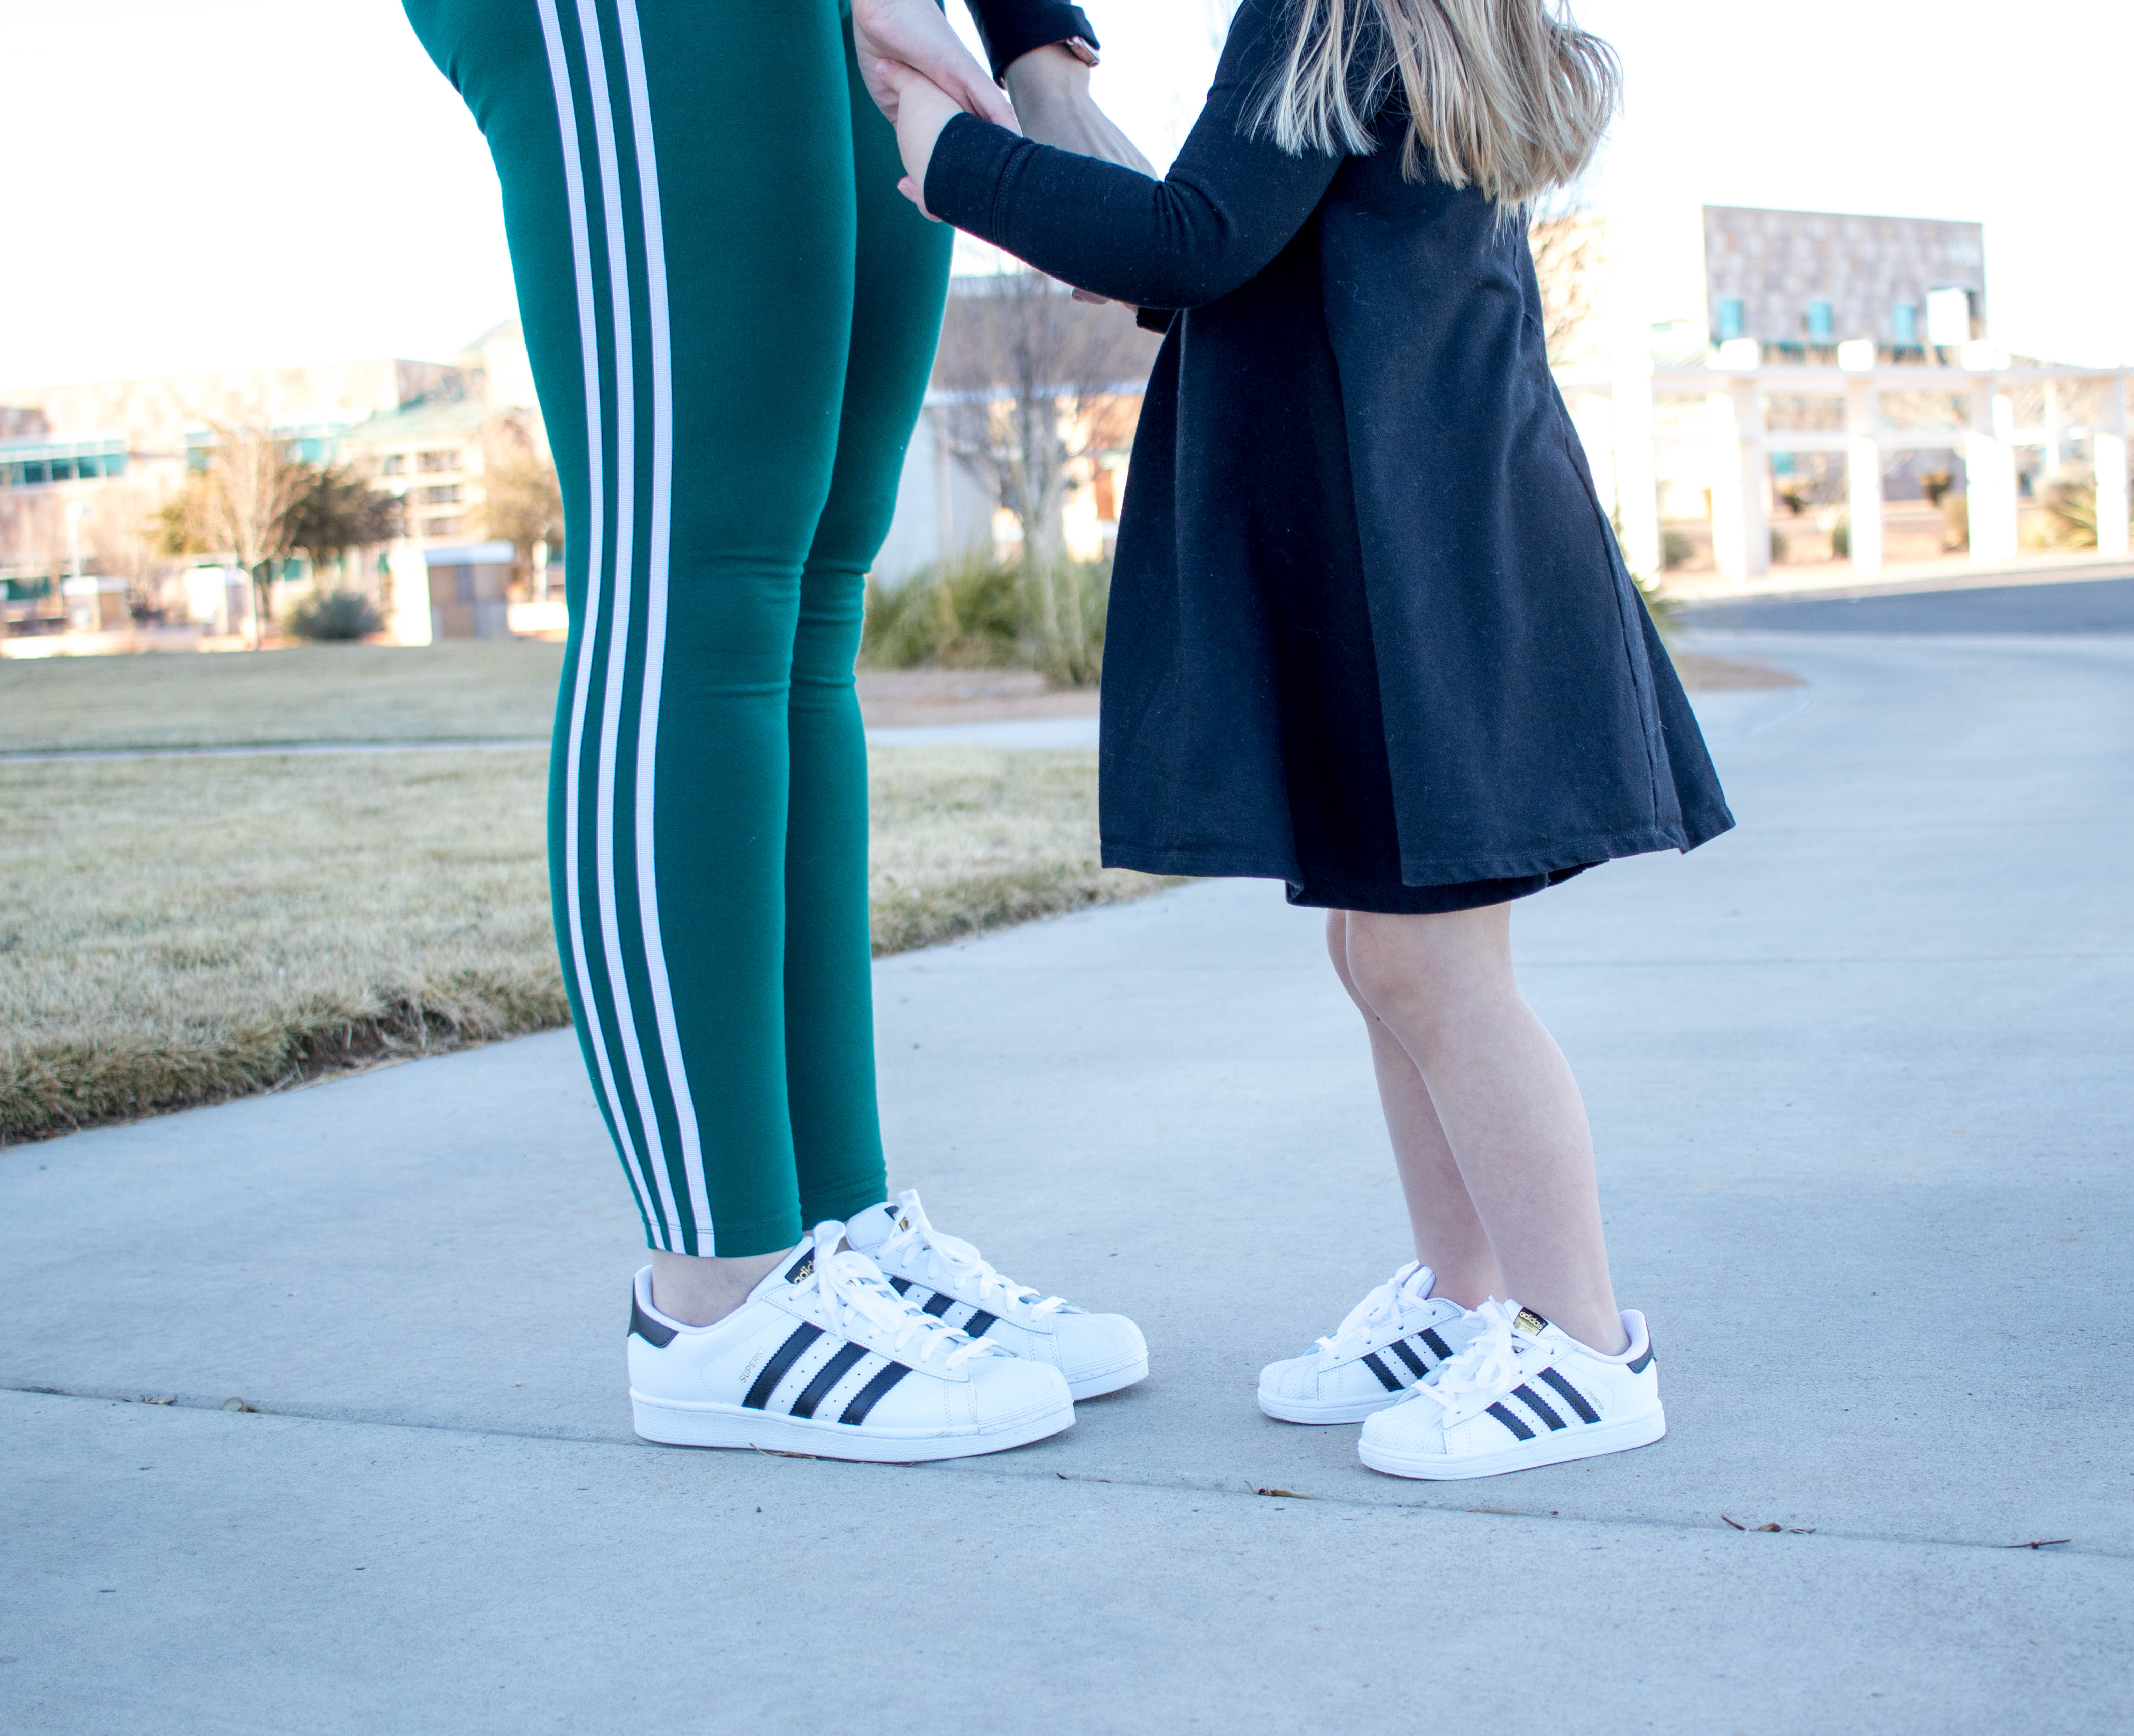 Adidas superstar originals twinning #twinning #Adidas #mommyandmestyle